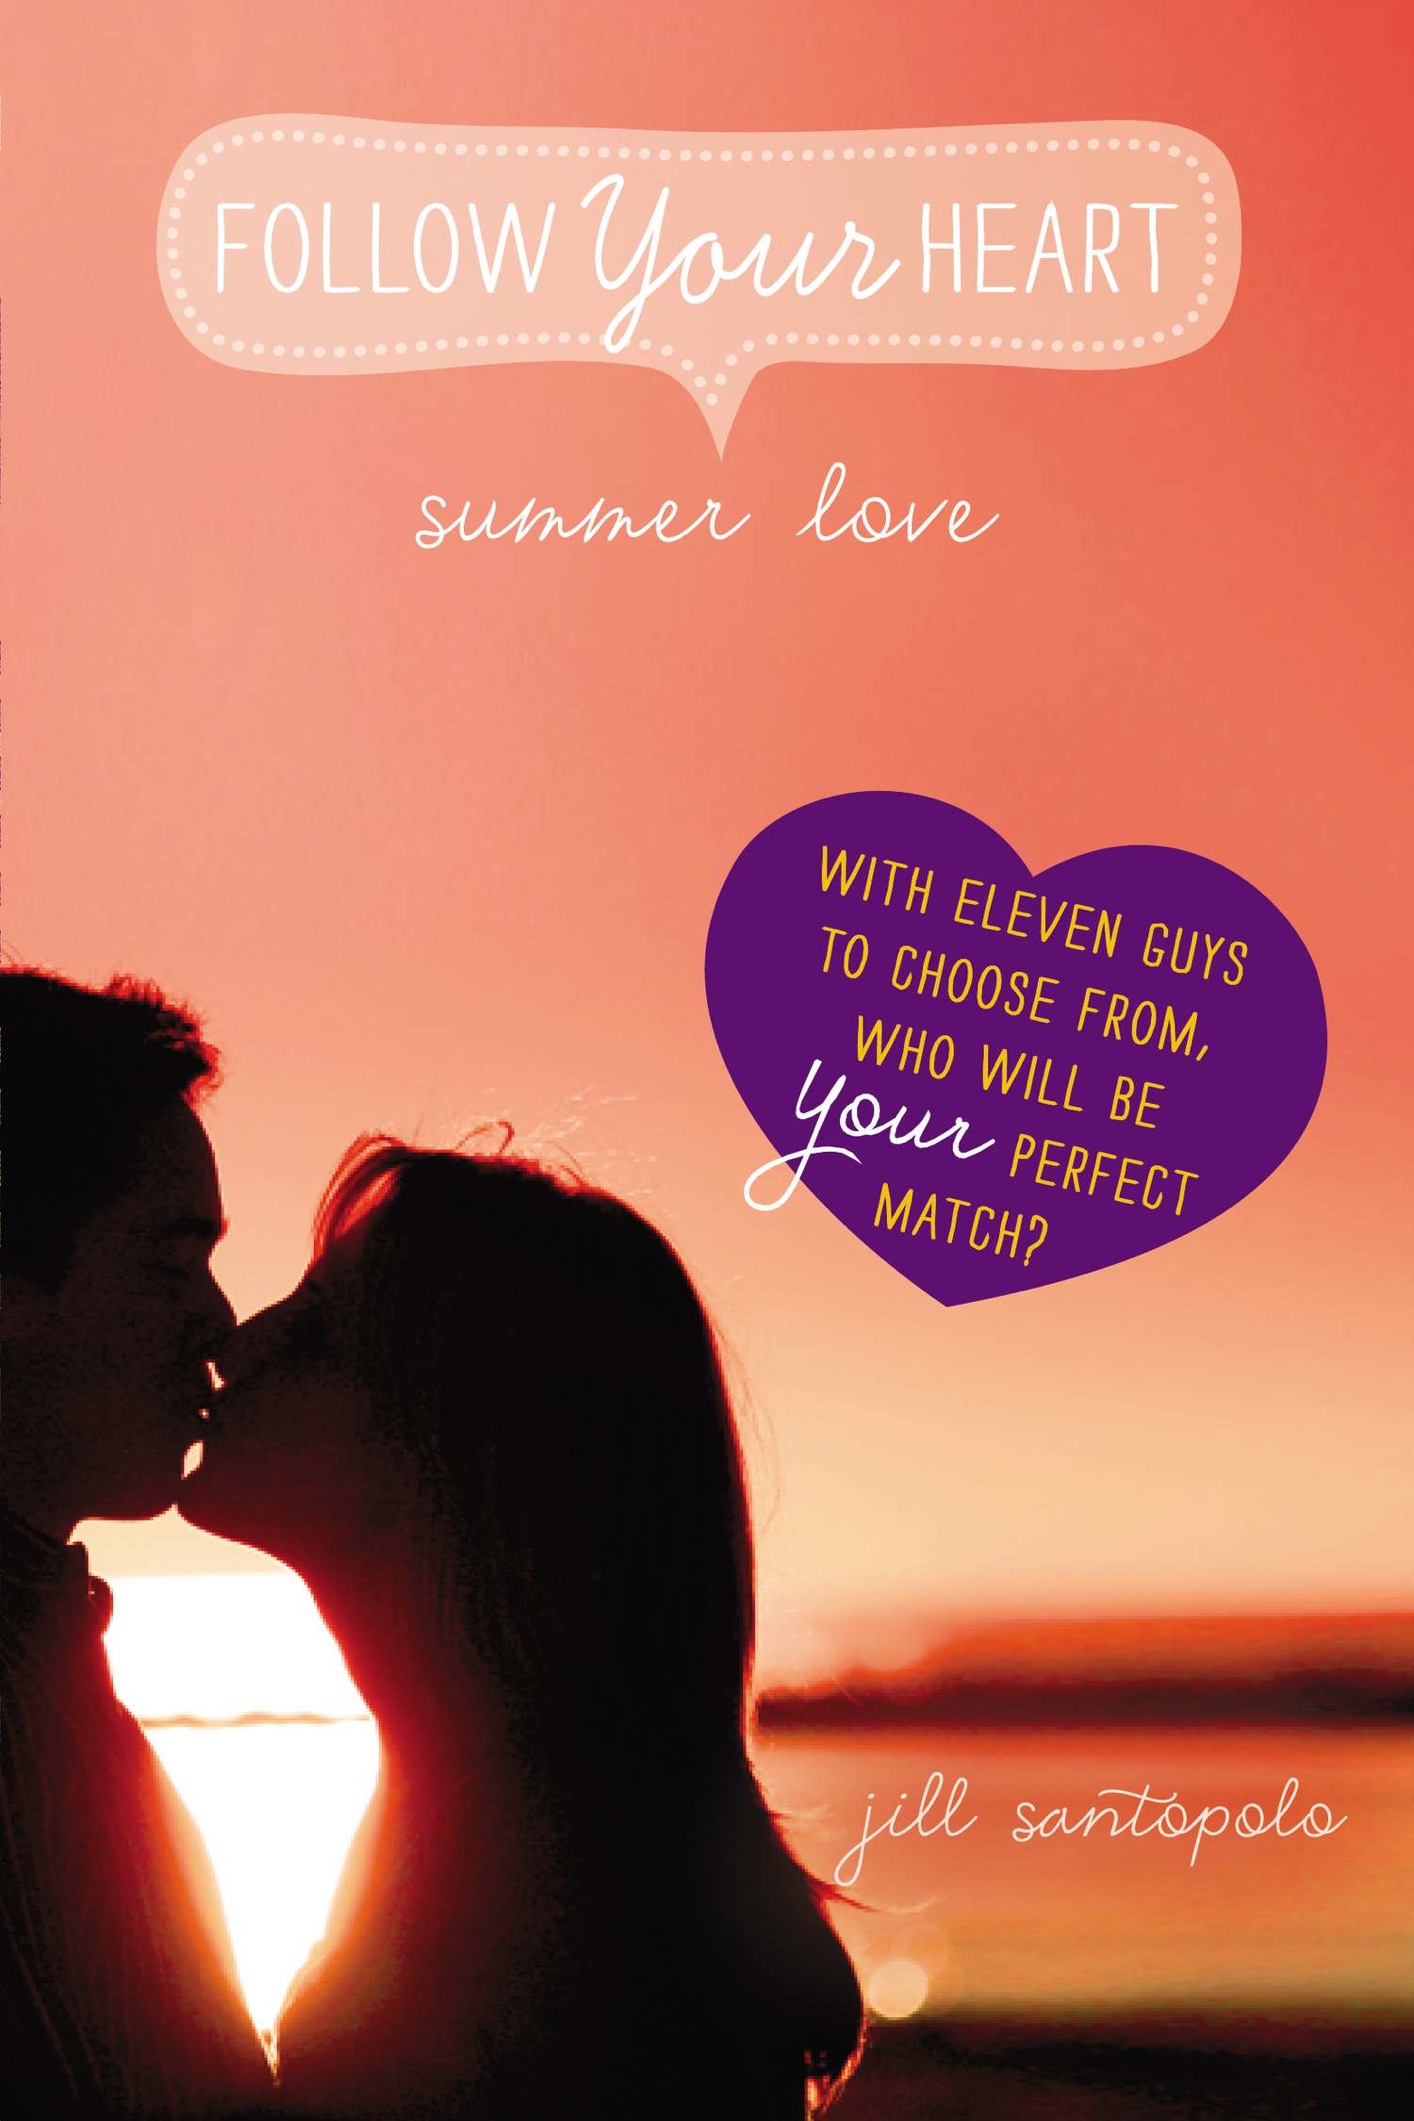 Summer Love (2014) by Jill Santopolo